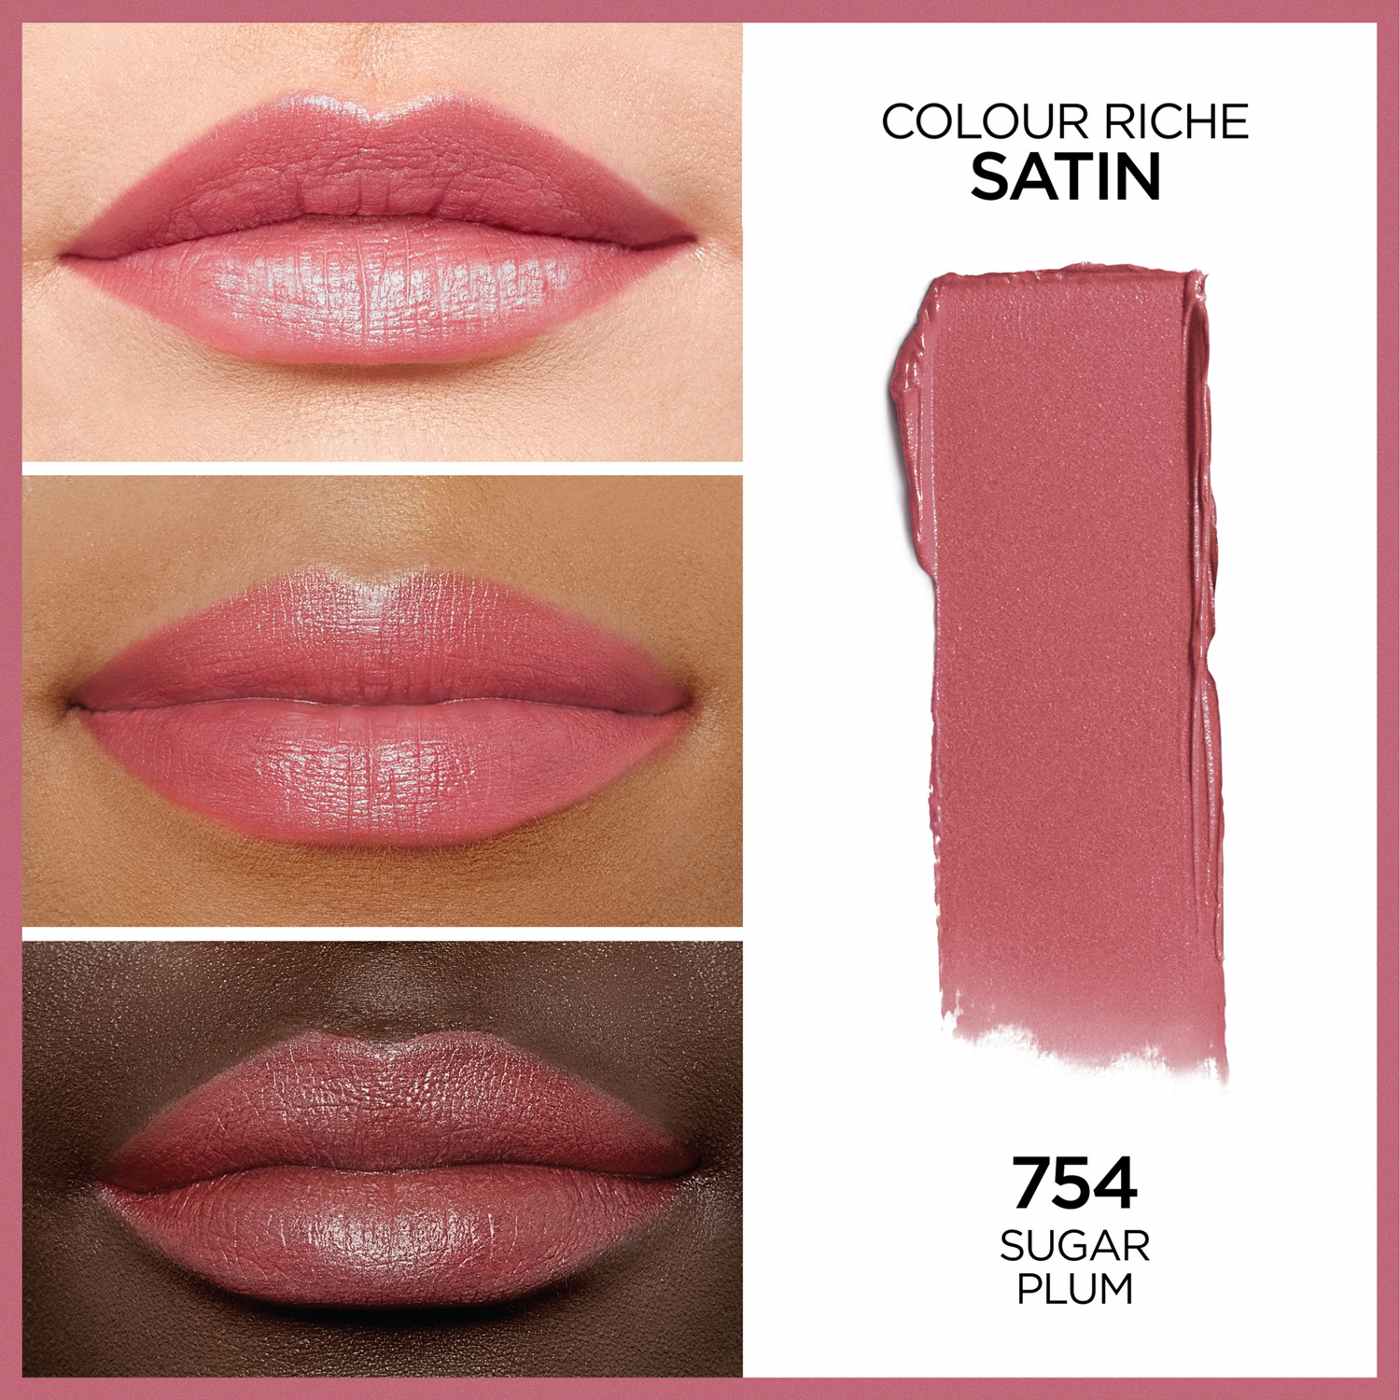 L'Oréal Paris Colour Riche Original Satin Lipstick - Sugar Plum; image 4 of 5